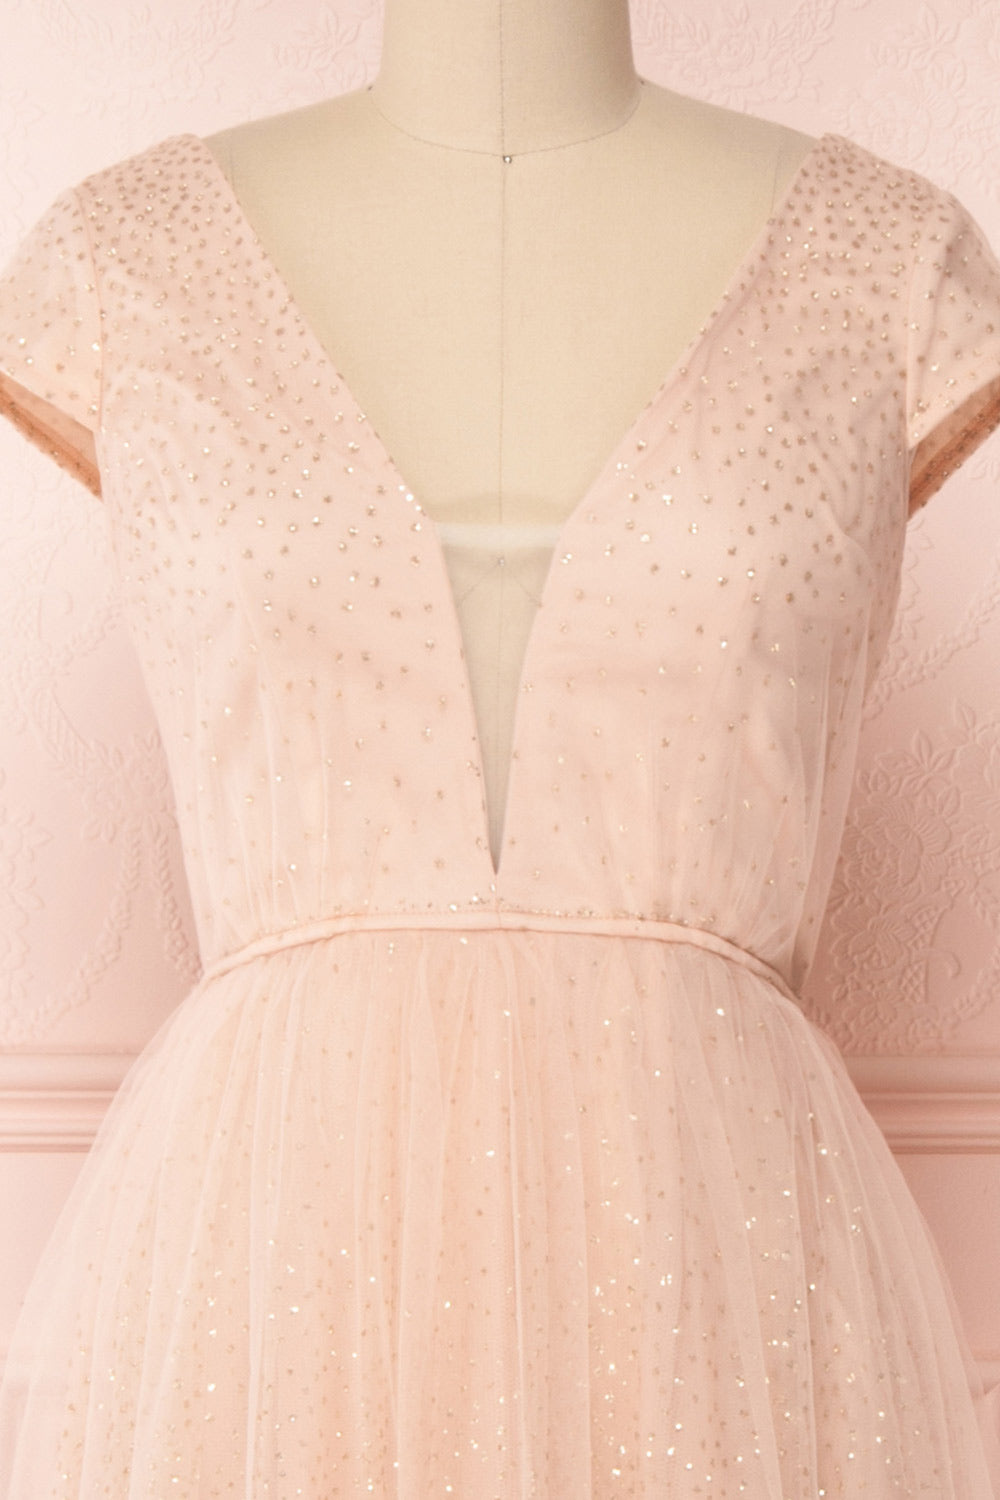 Marjolie | Robe Rose de Tulle Brillante